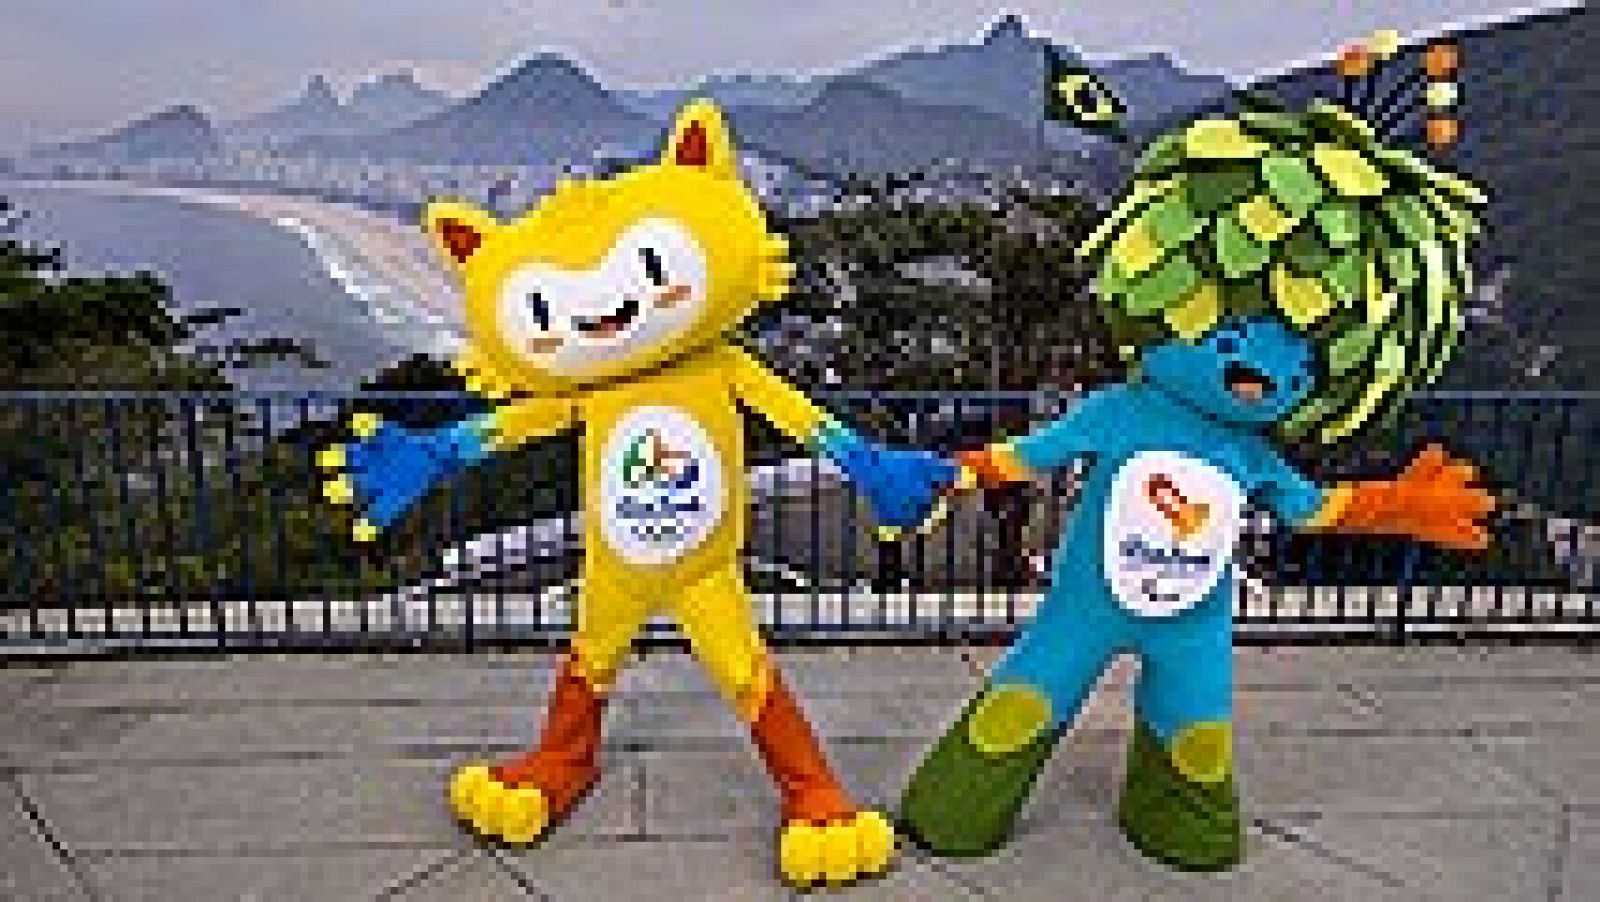 Los Juegos de Río ya tienen mascotas. Son un animal amarillo y un árbol animado, que buscan nombre en una votación popular que se celebrará por internet.